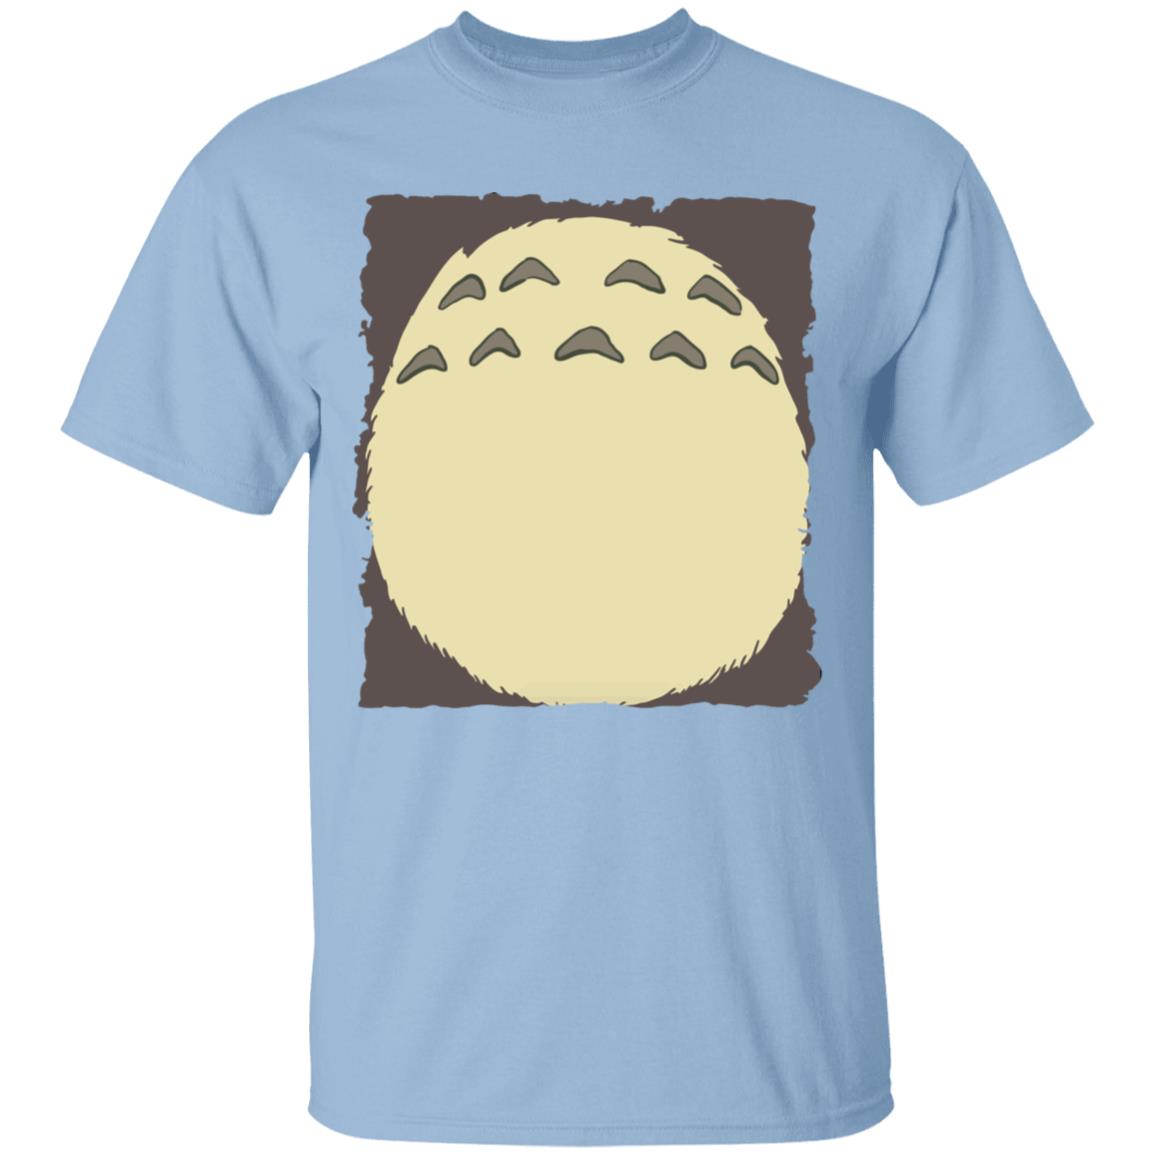 My Neighbor Totoro – Totoro Belly T Shirt